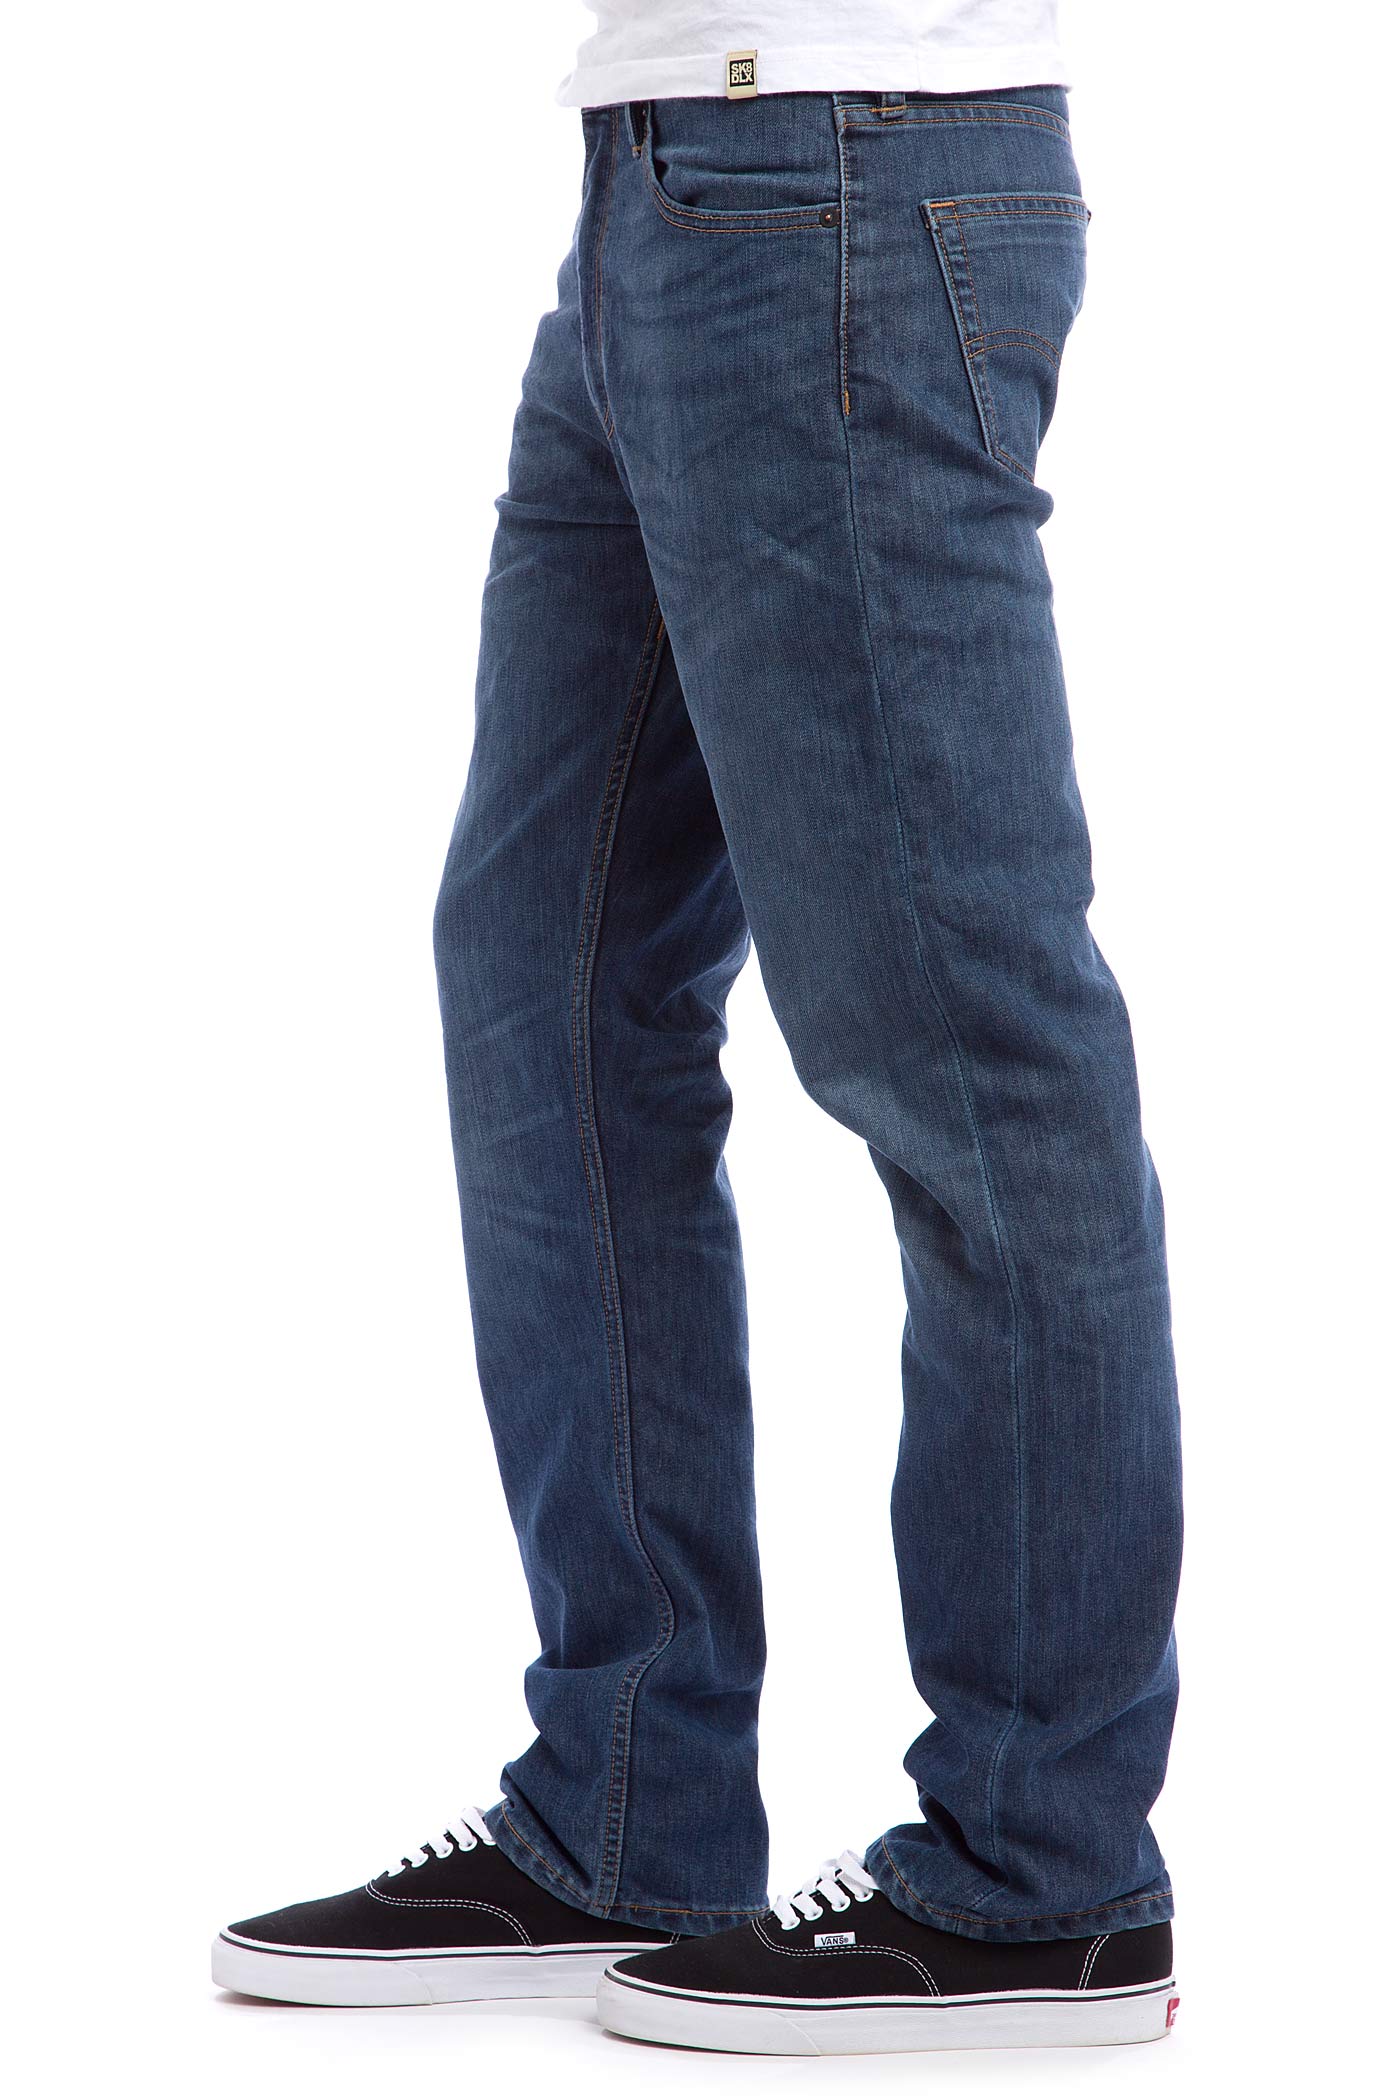 Levi's Skate 504 Regular Straight Jeans (turk) buy at skatedeluxe